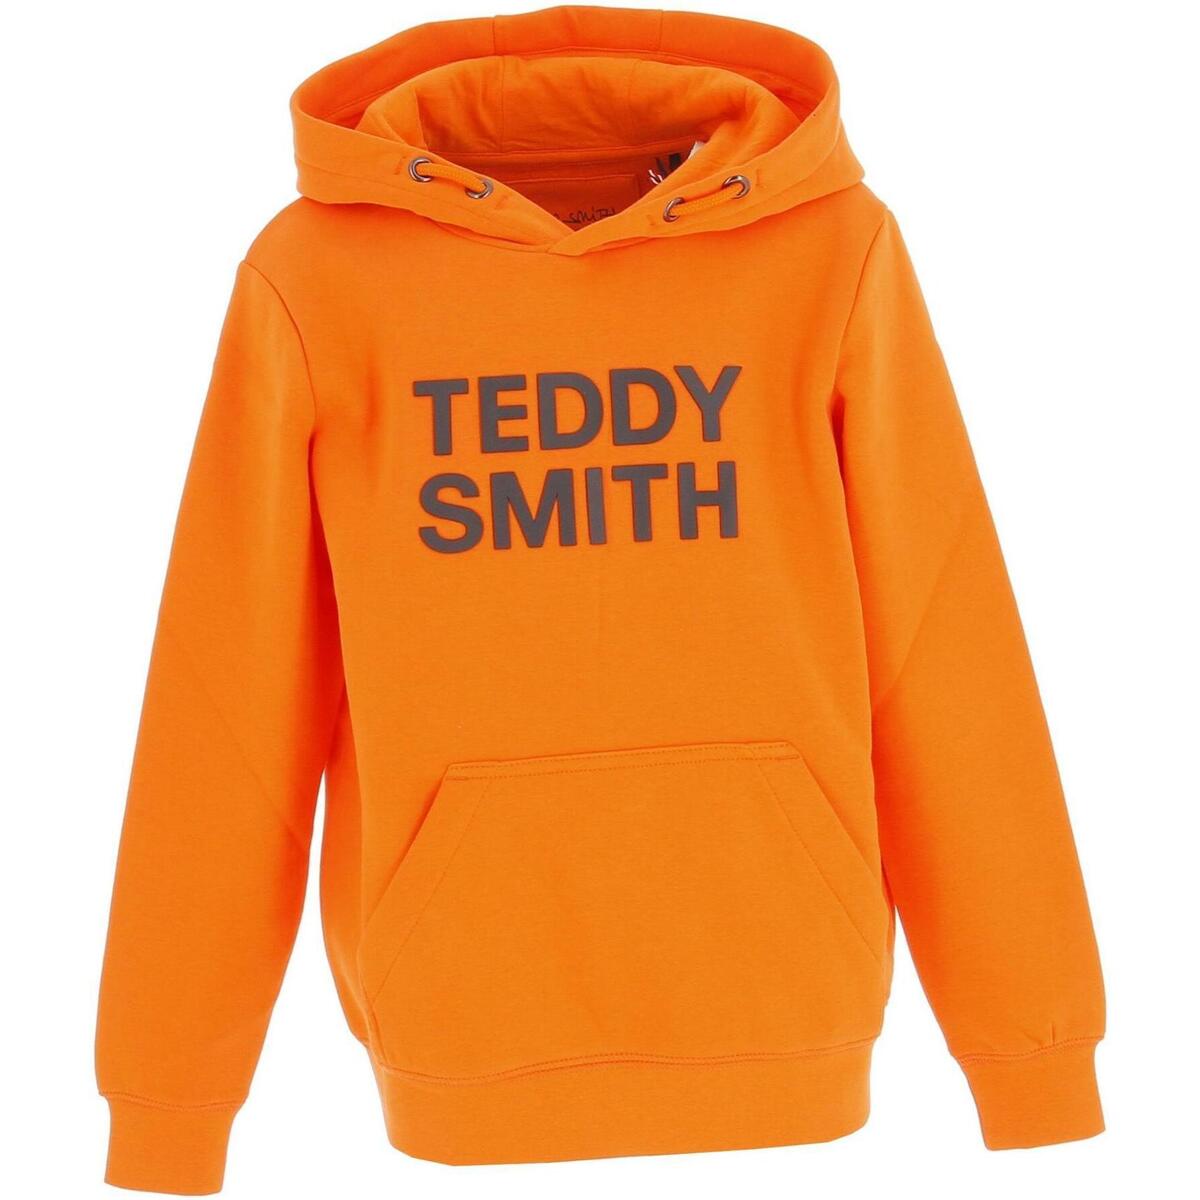 Teddy Smith Orange Siclass hoody j kRv09onP